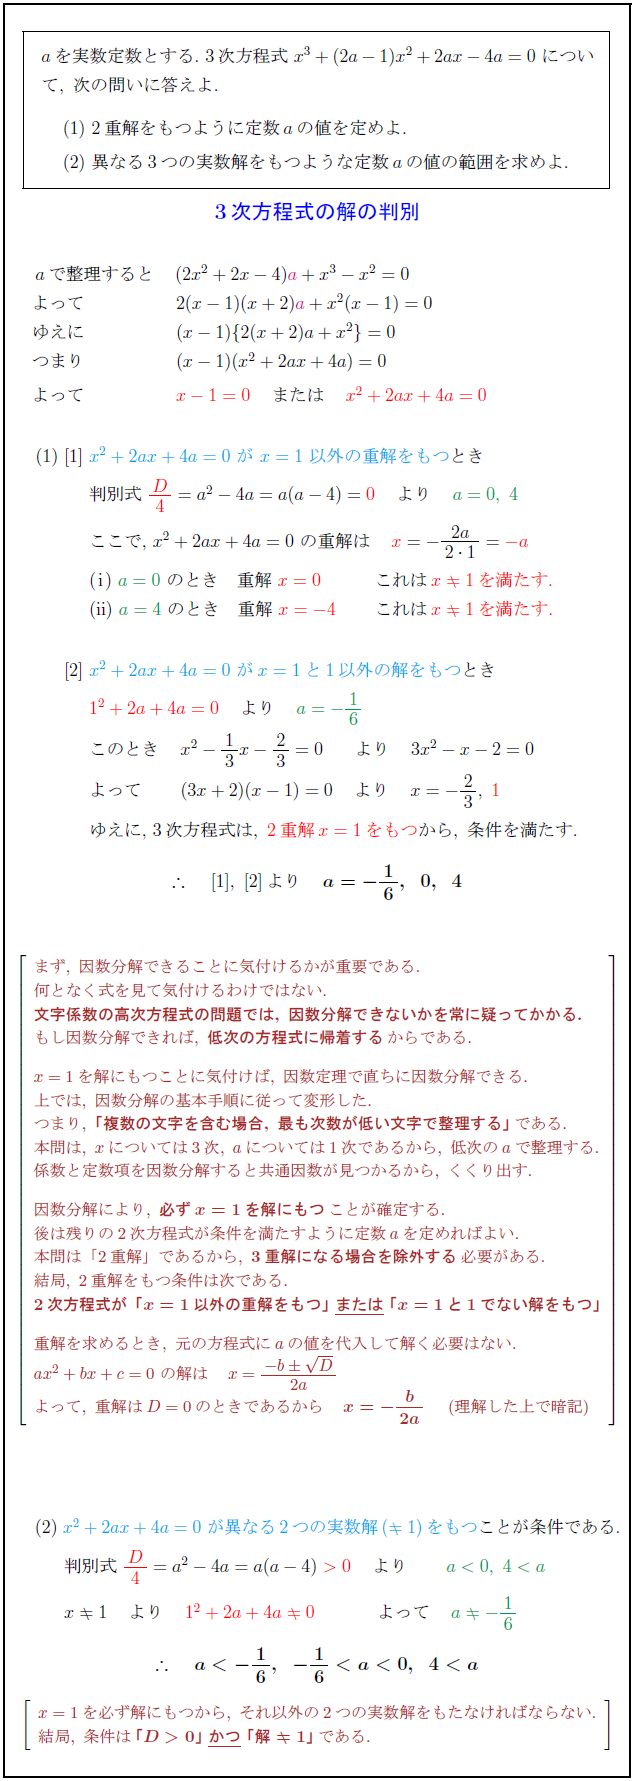 高校数学 文字係数3次方程式が2重解 異なる3実数解をもつ条件